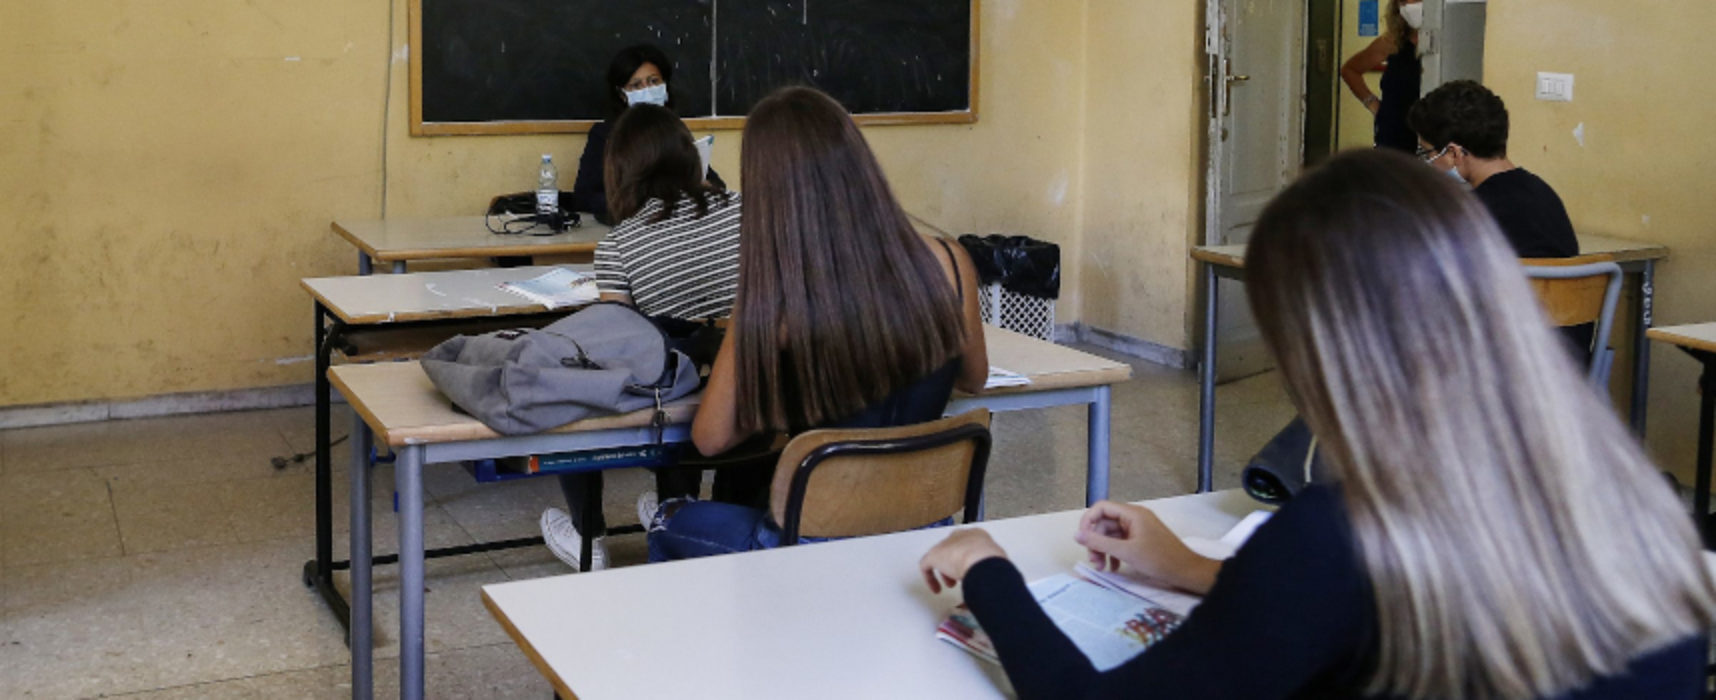 Prolungamento calendario scuola, presidi di Puglia: “Per corsi recupero servono risorse”